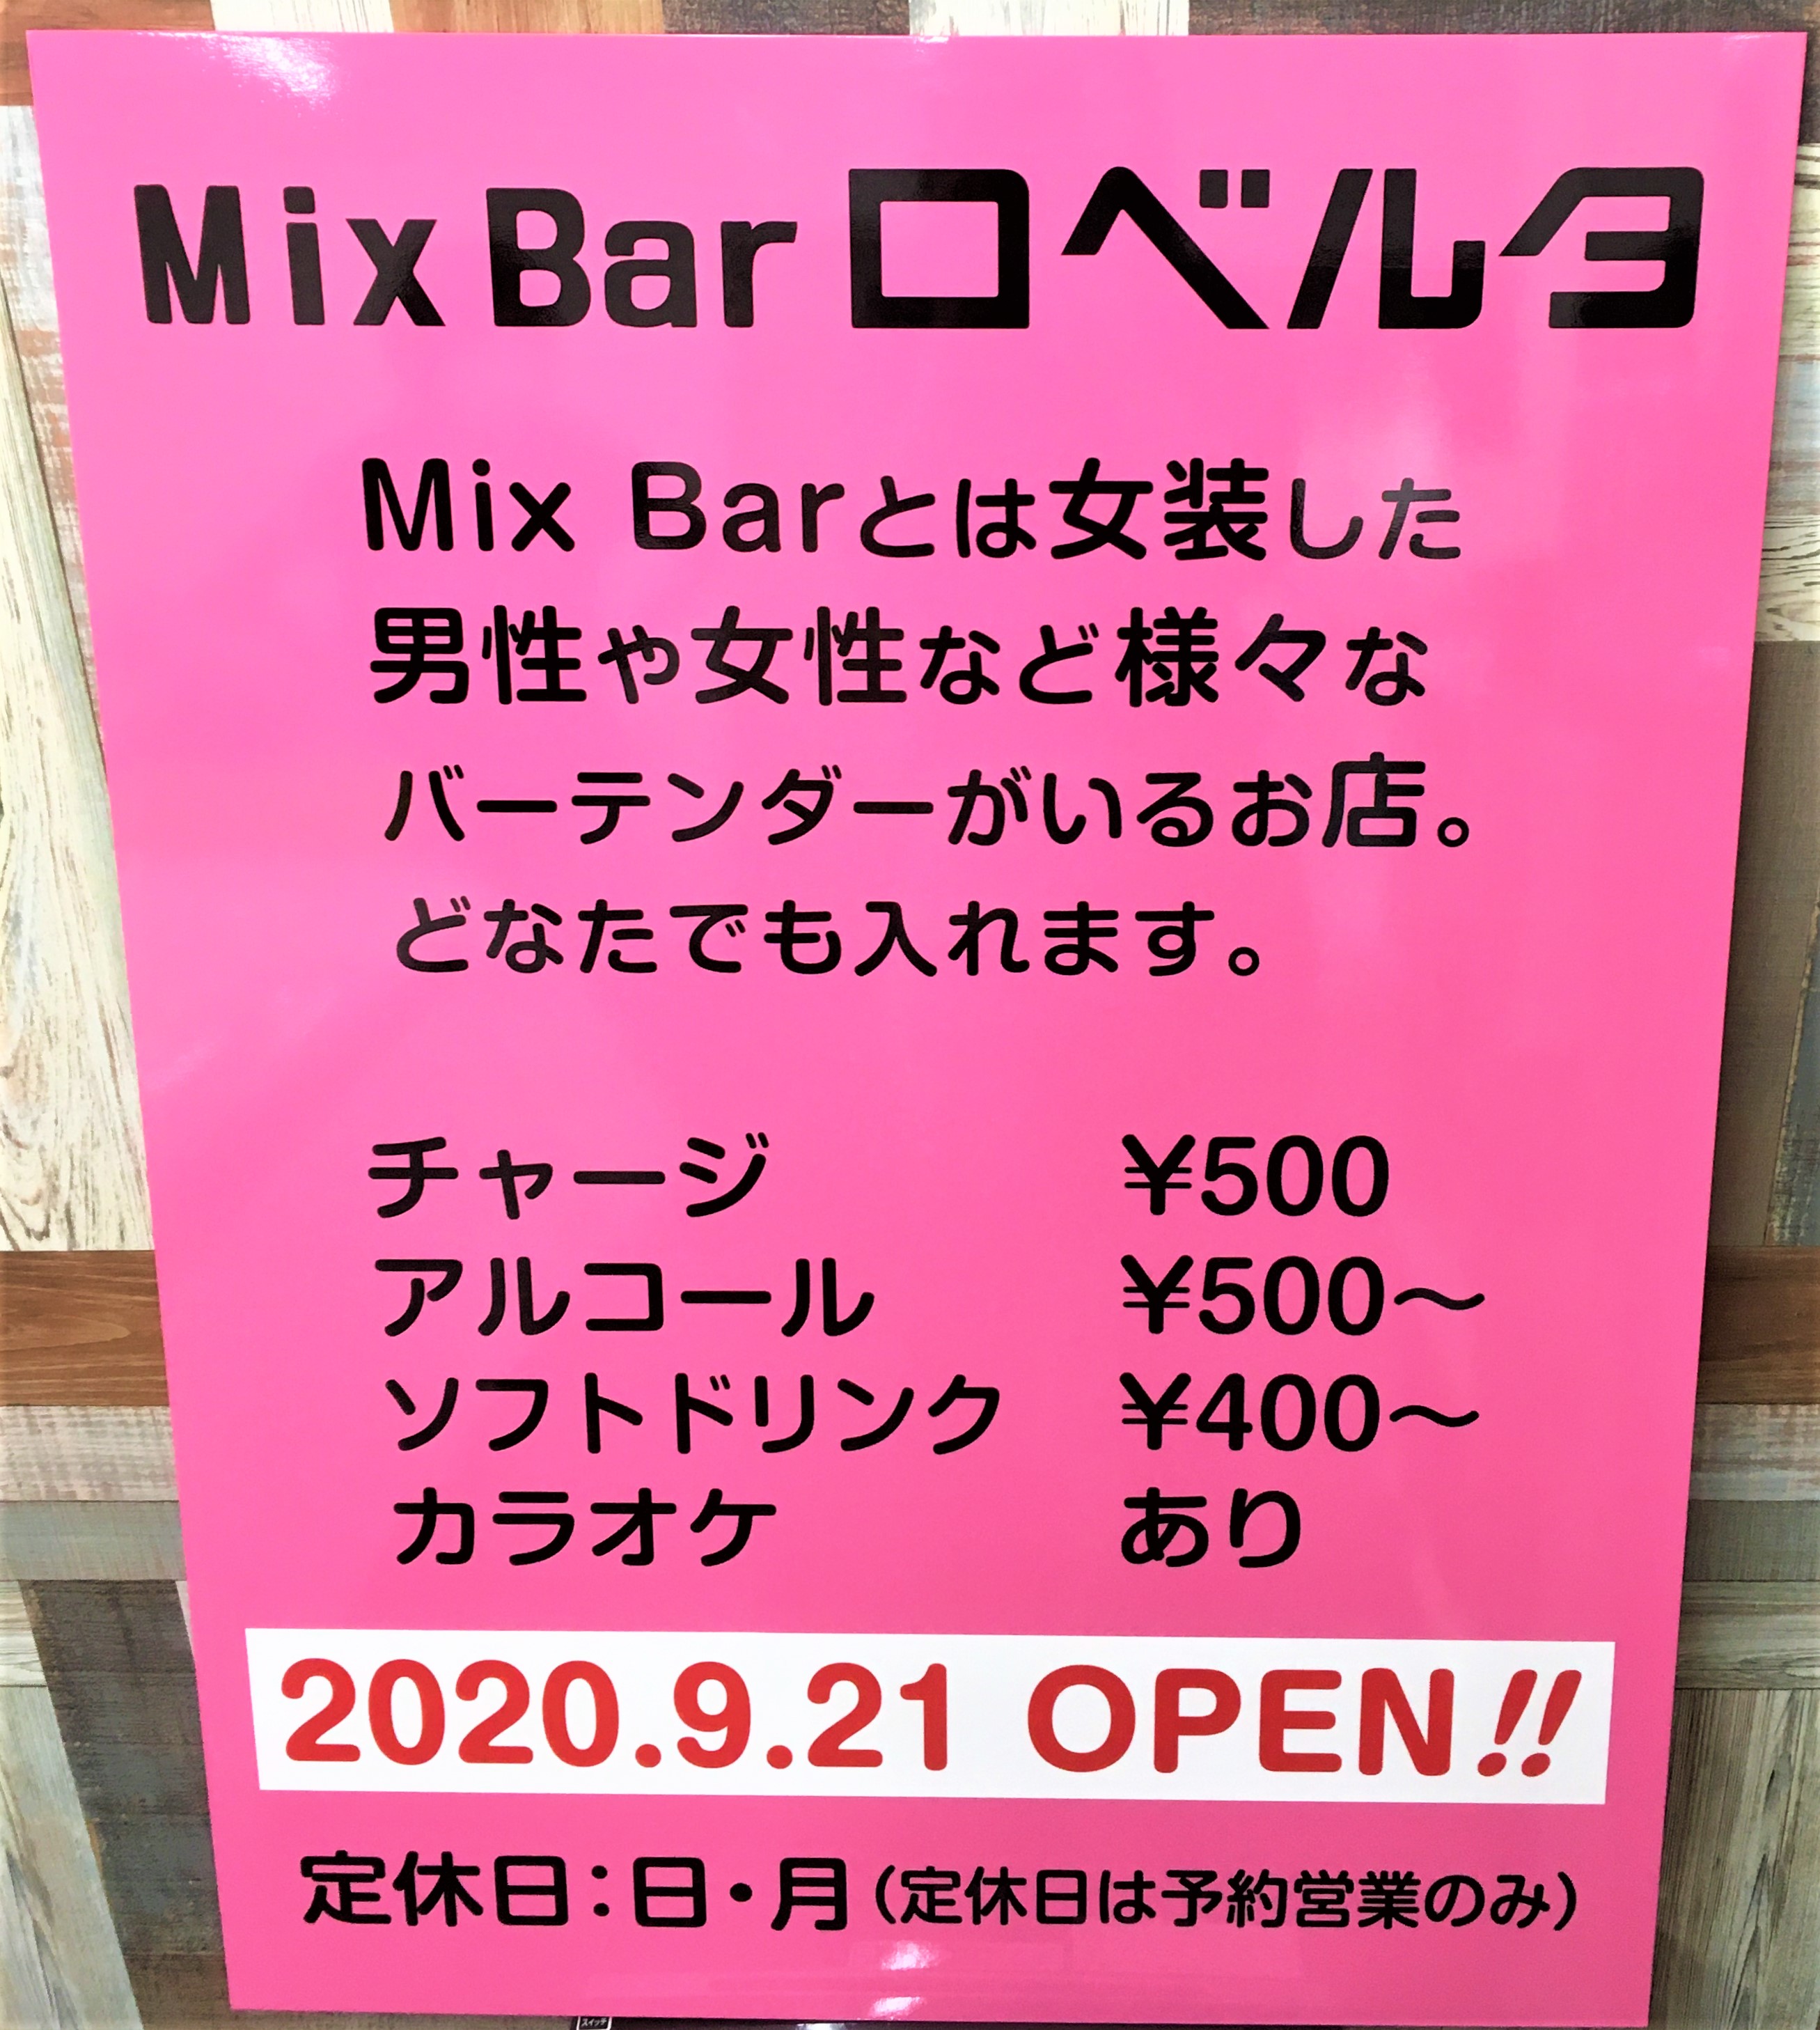 大阪 藤井寺の看板屋 Mix Bar ロベルタ様看板 の事例をご紹介します 藤井寺市の看板屋グッジョブ